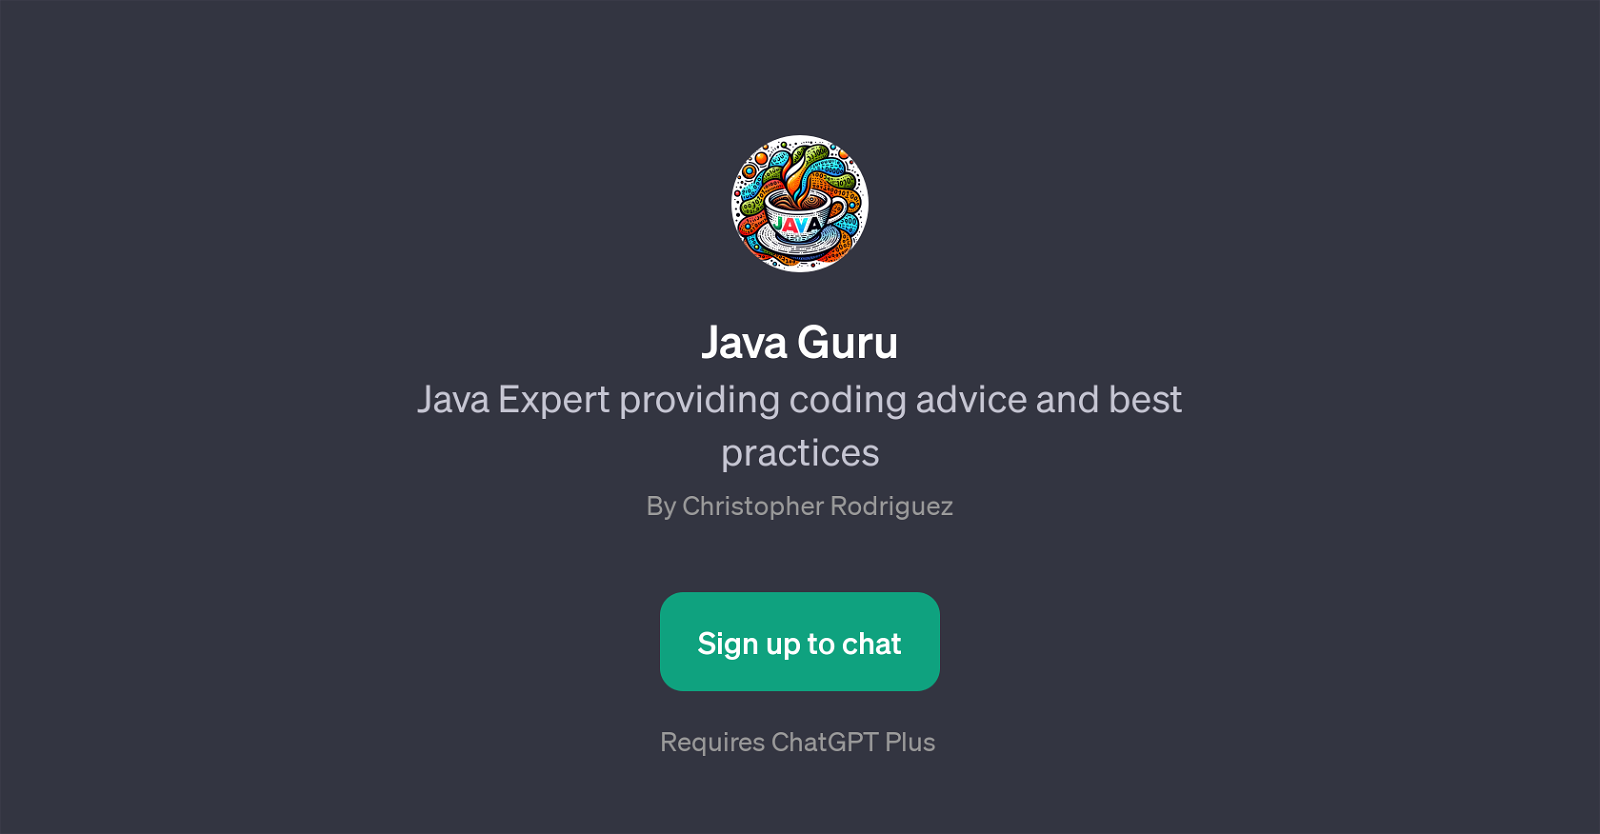 Java Guru website